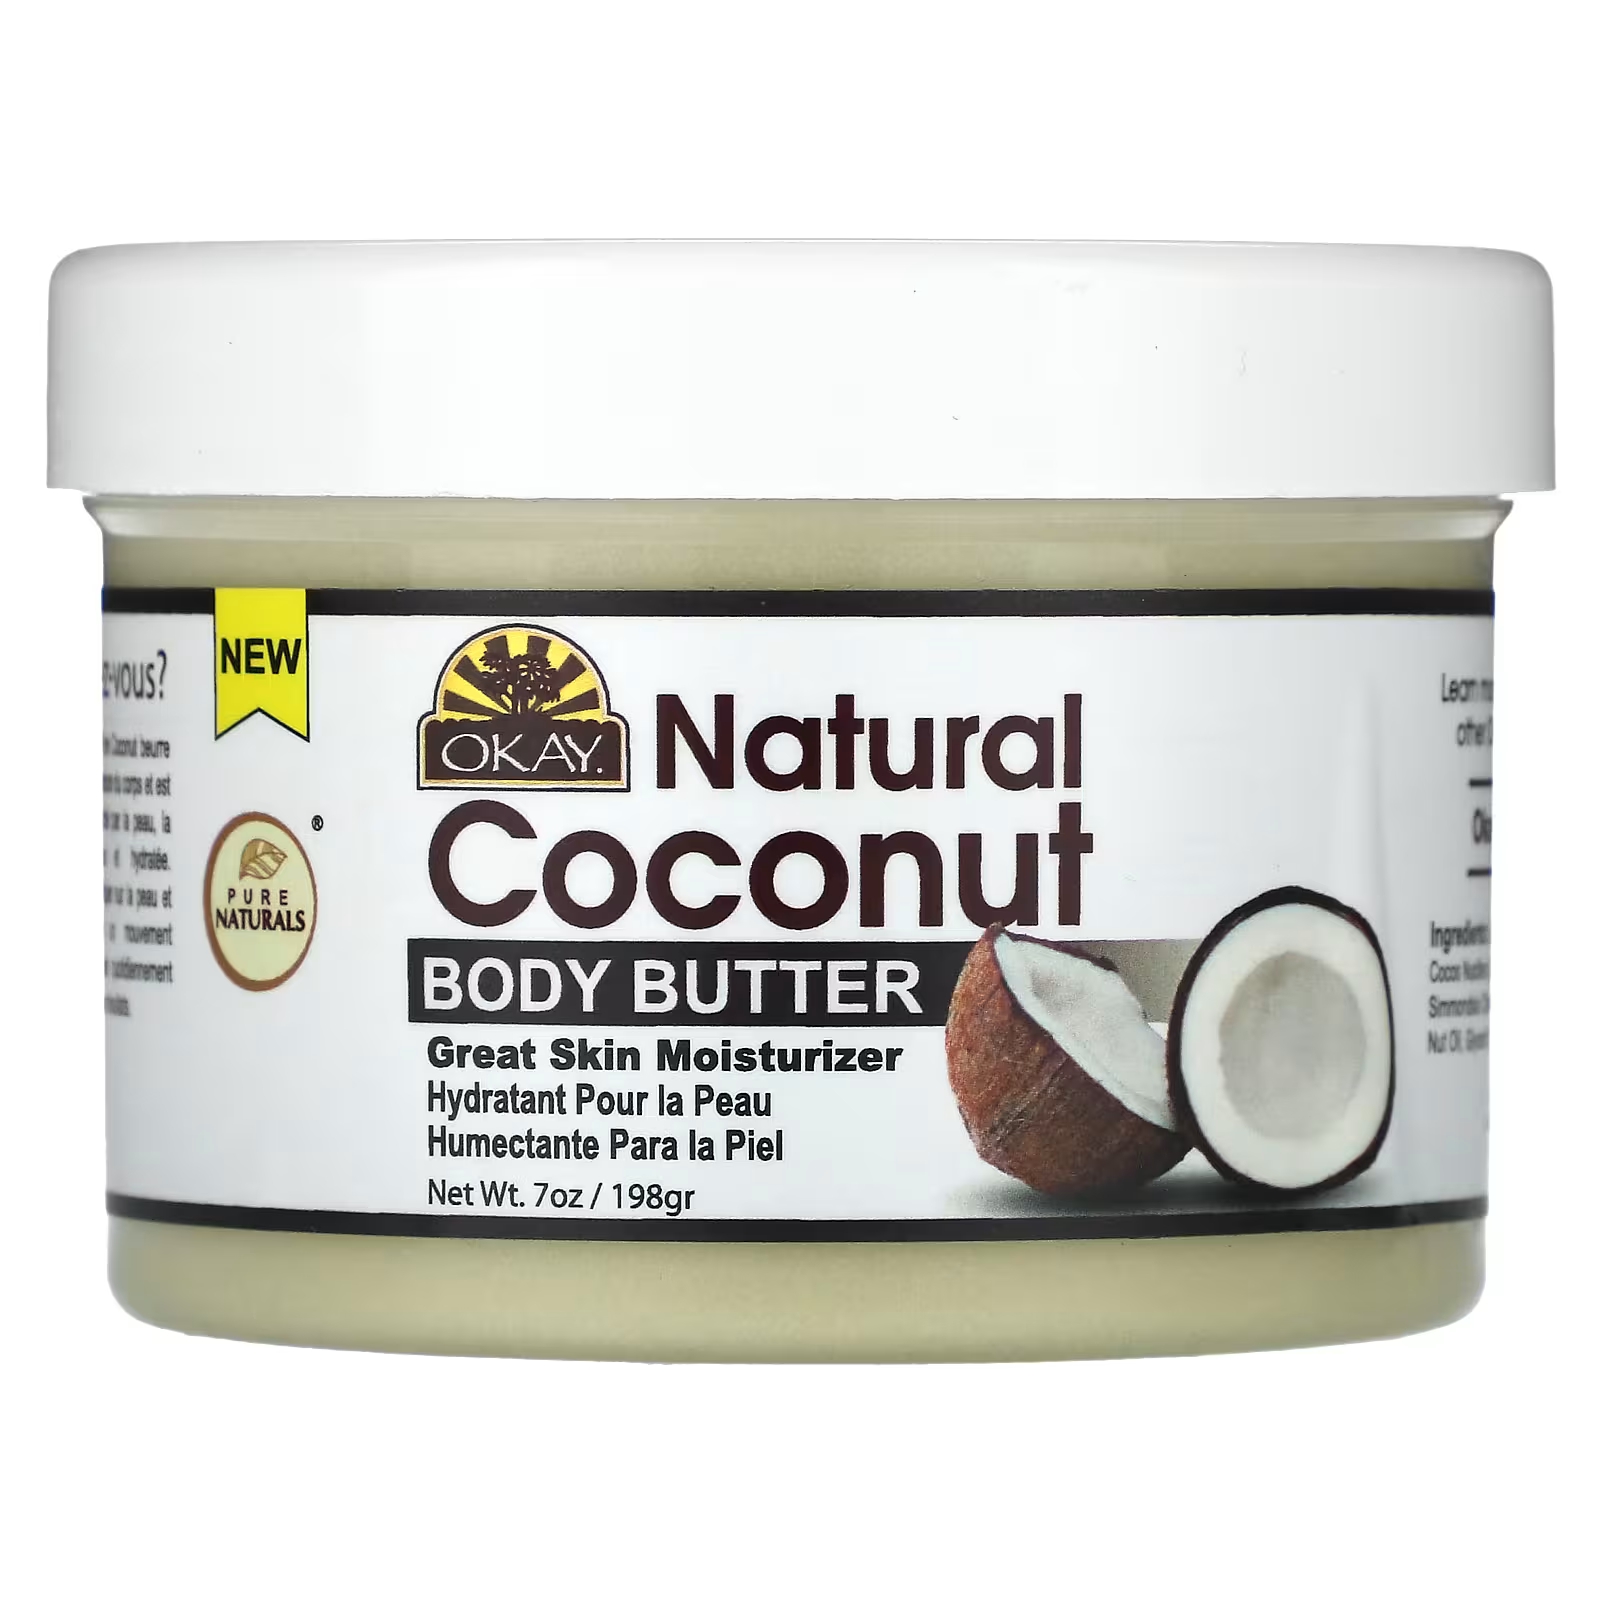 Кокосовое масло Okay Pure Naturals для тела, 198 г африканское масло ши okay pure naturals для кожи и волос 212 г